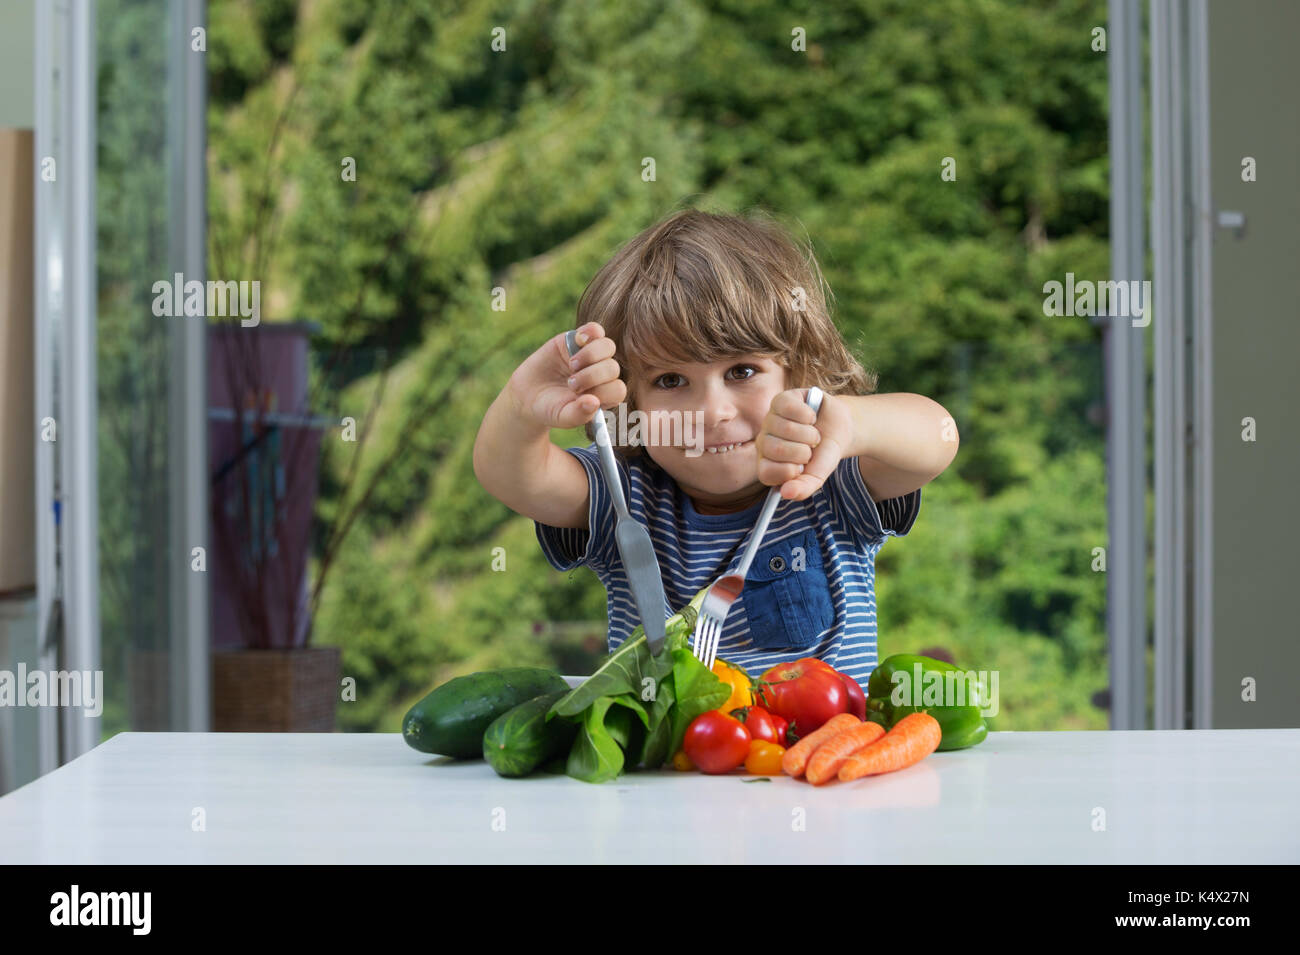 Adorable petit garçon assis à la table de légumes emballés par repas, bonnes ou mauvaises habitudes alimentaires, la nutrition et la saine alimentation concept Banque D'Images